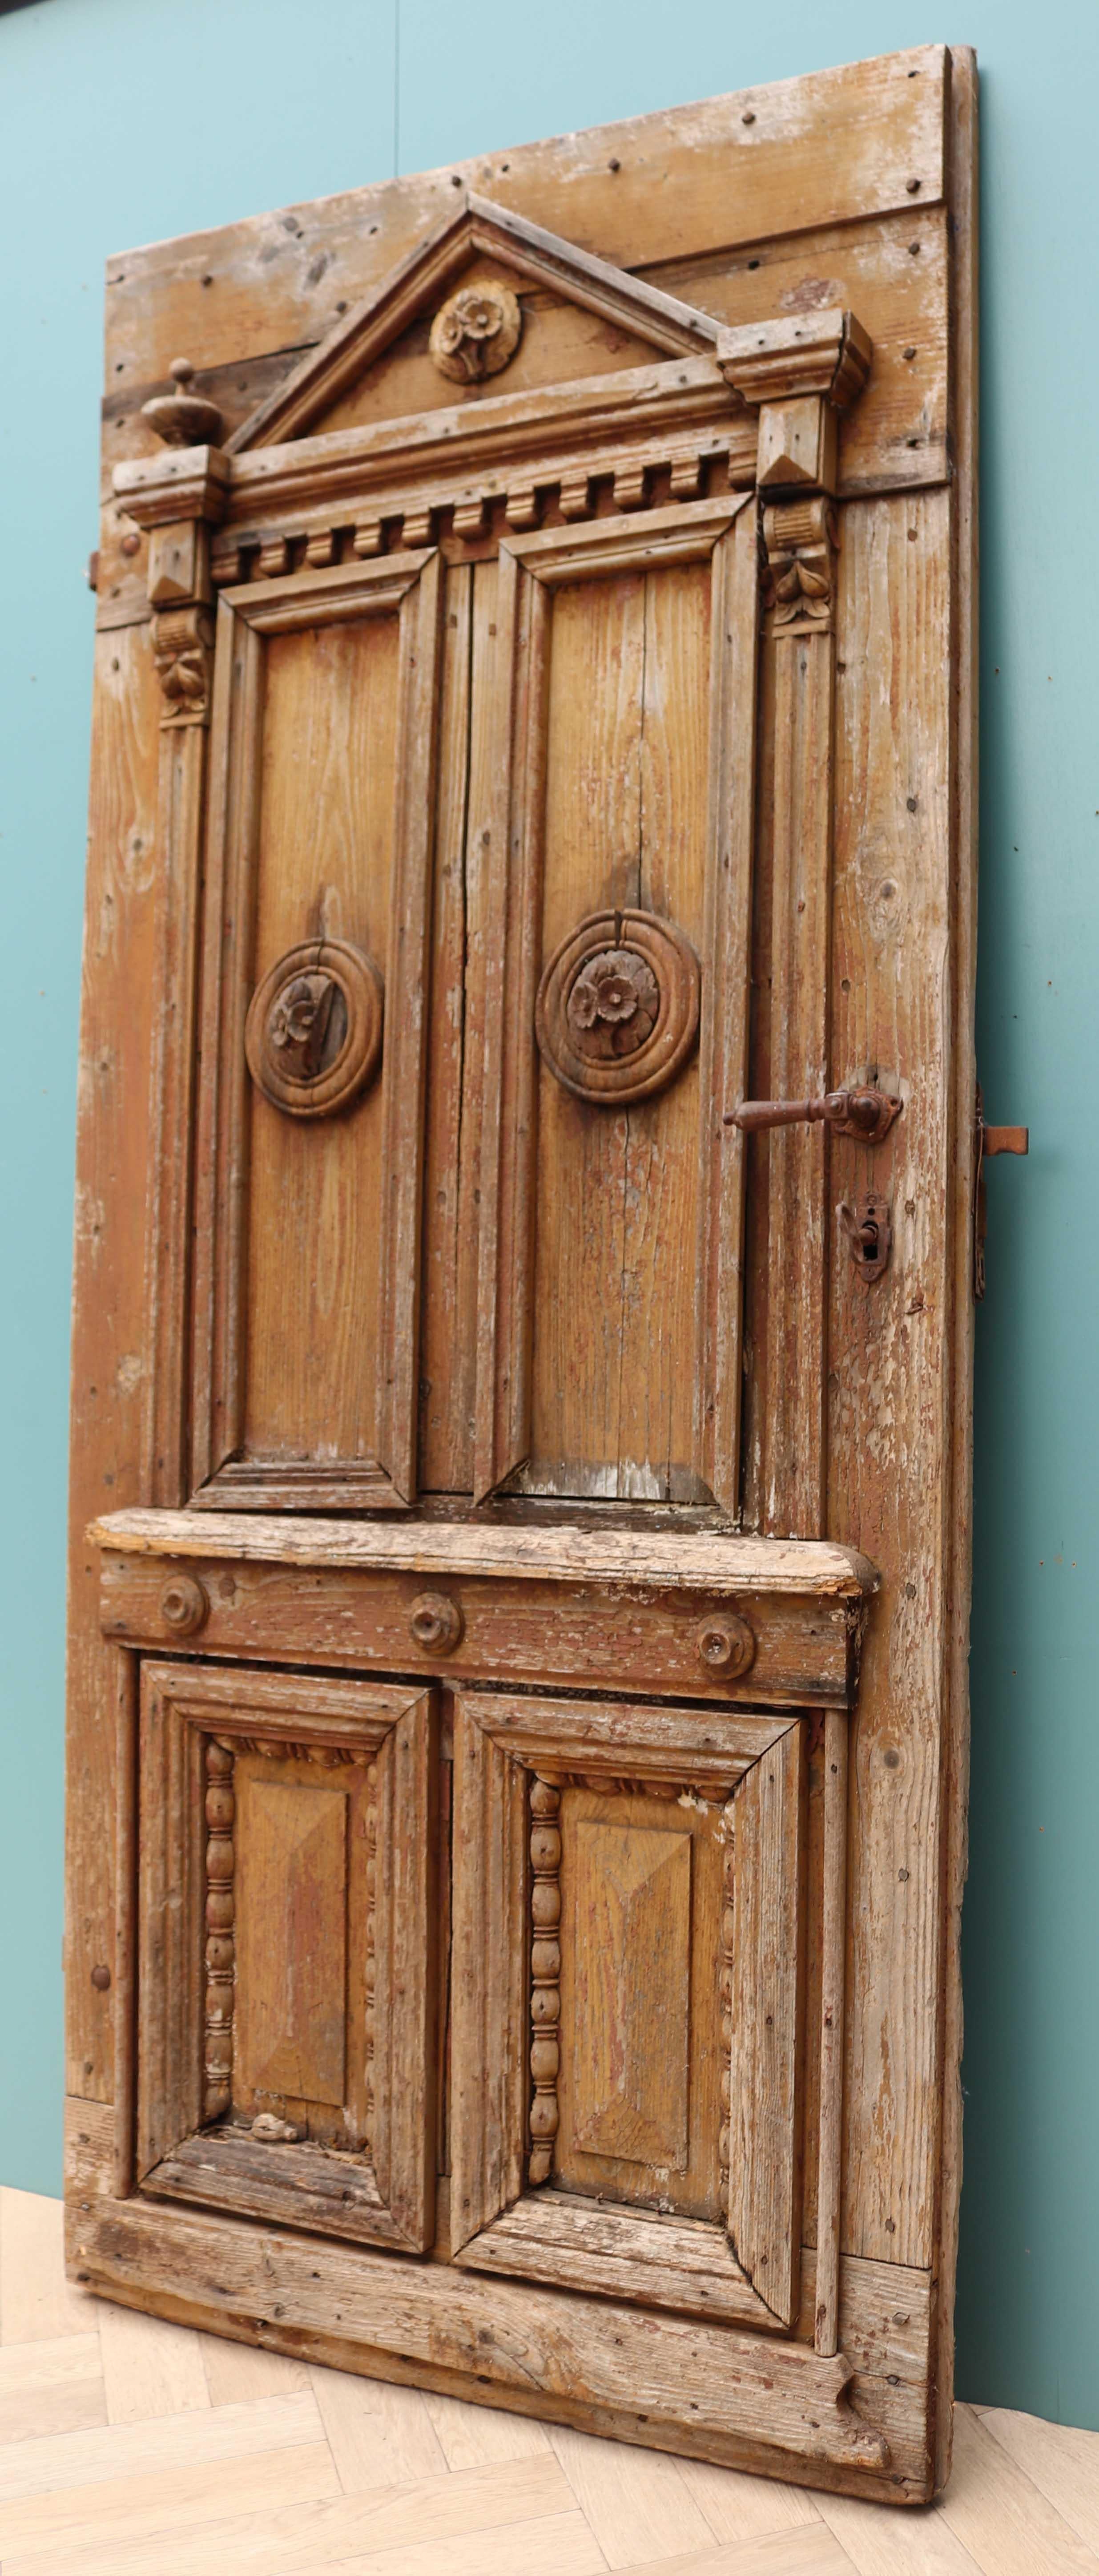 15 panel wood exterior door